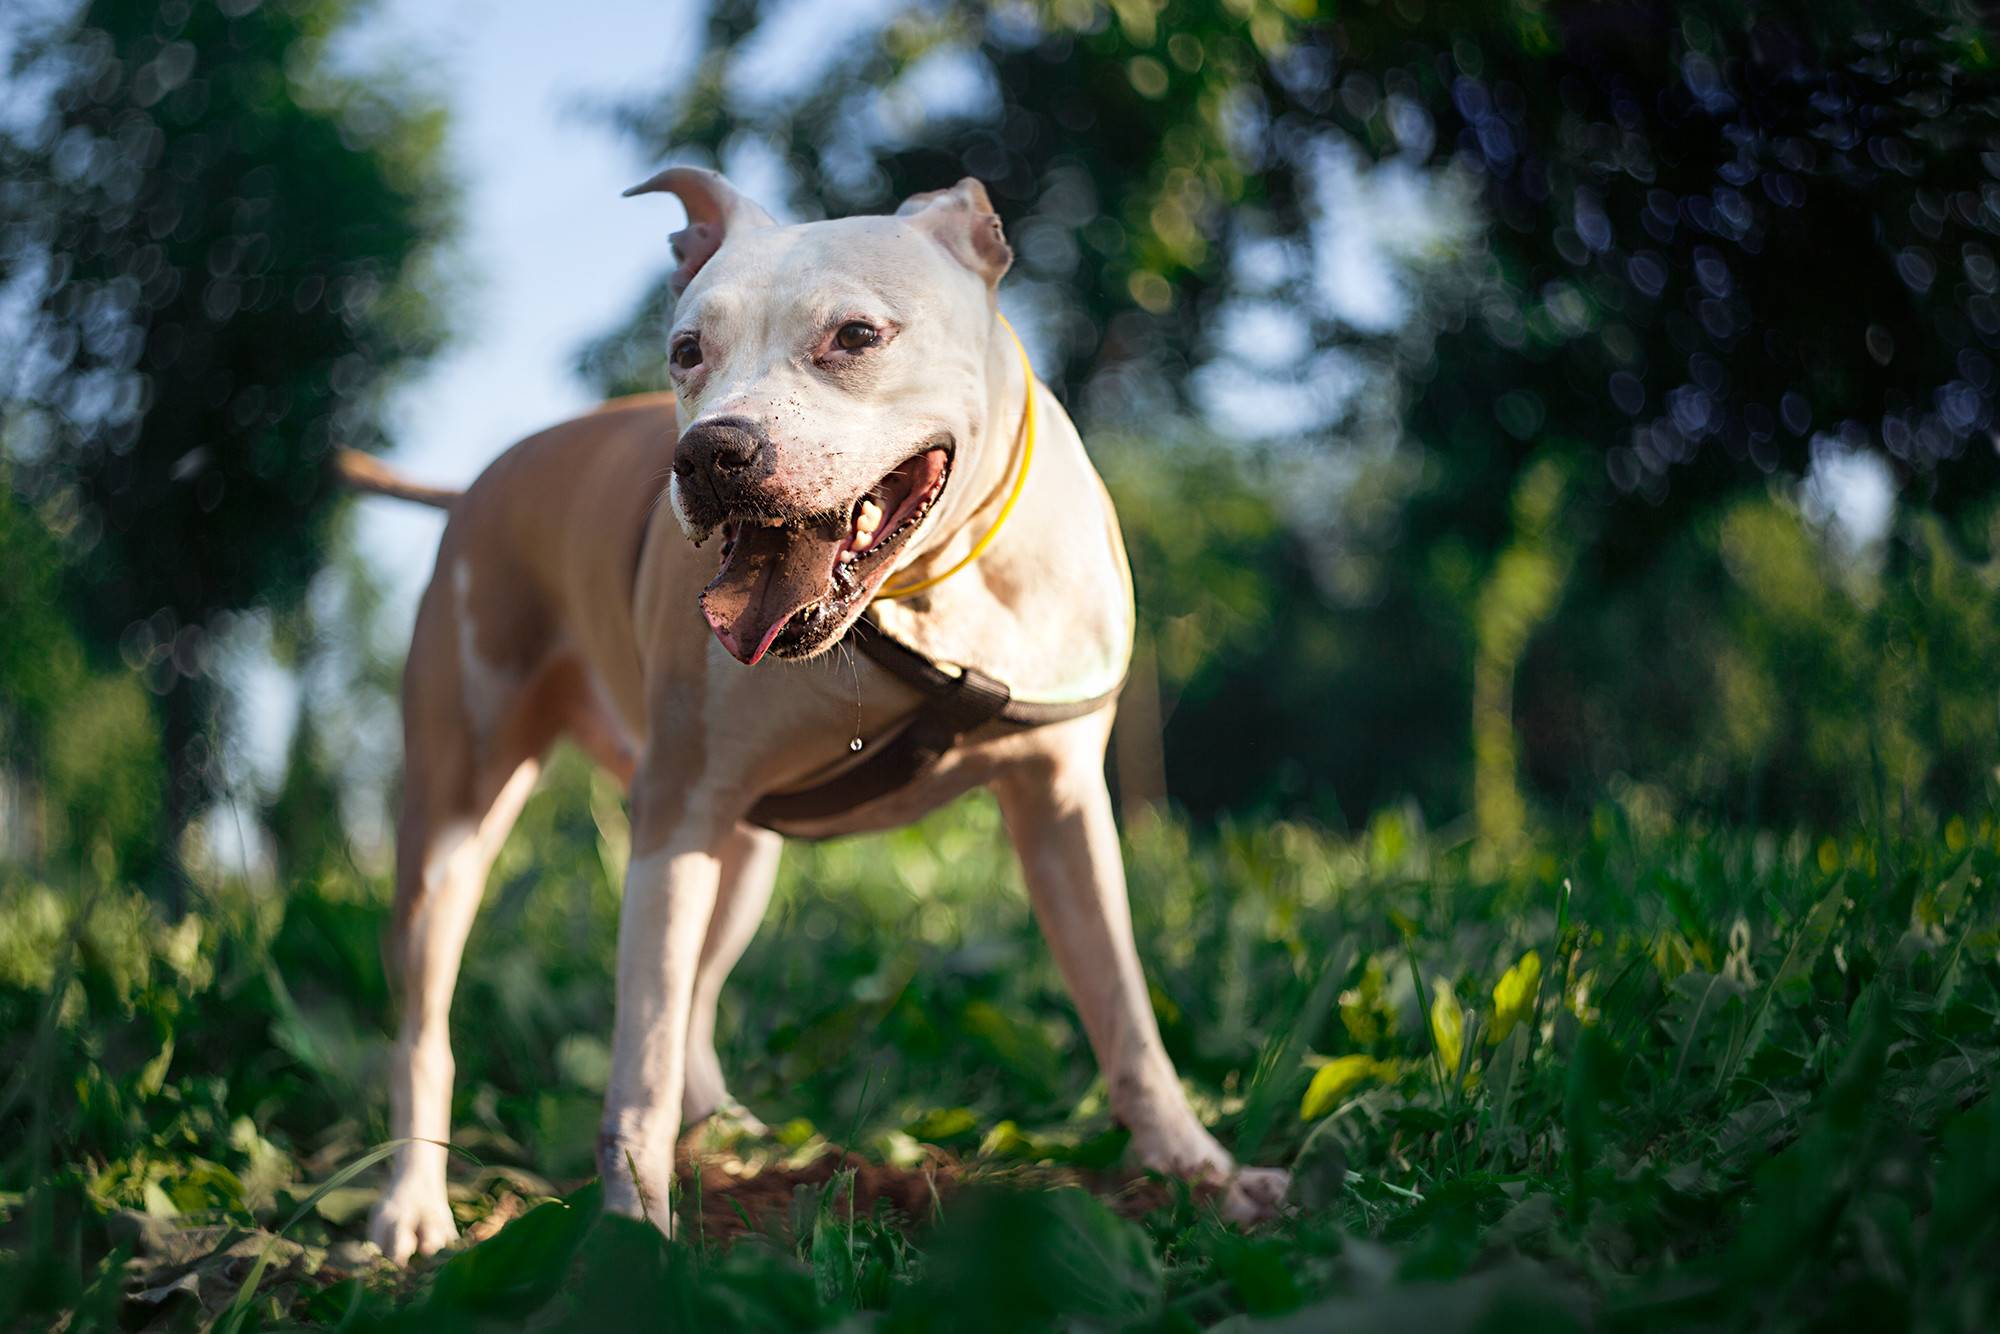 Самые злые собаки в мире: рейтинг опасных пород с описаниями и фото